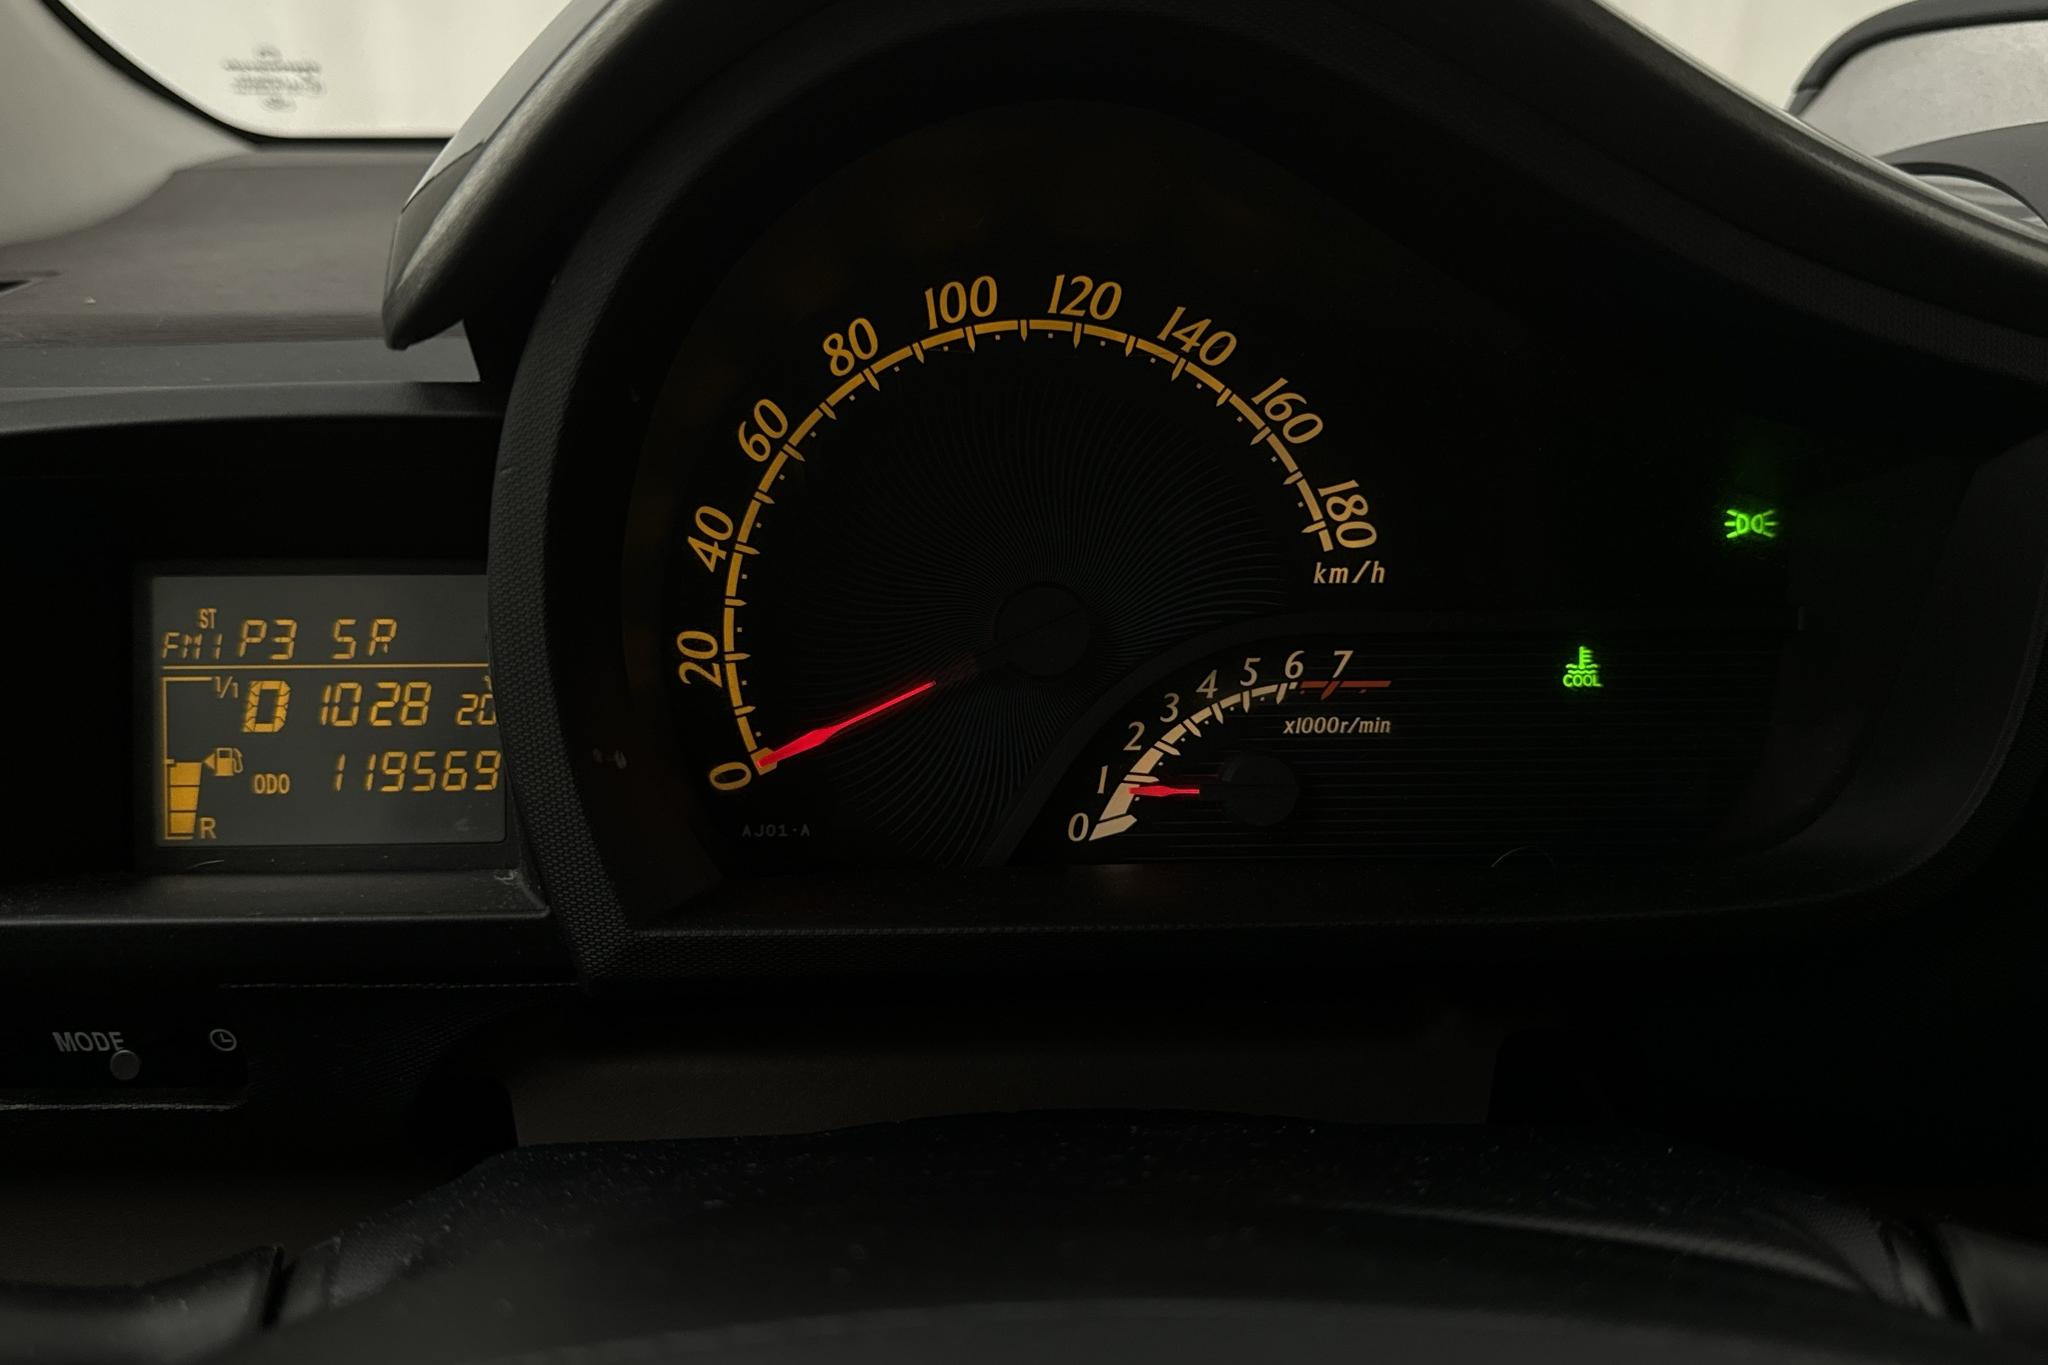 Toyota iQ 1.0 (68hk) - 119 570 km - Automatyczna - 2009